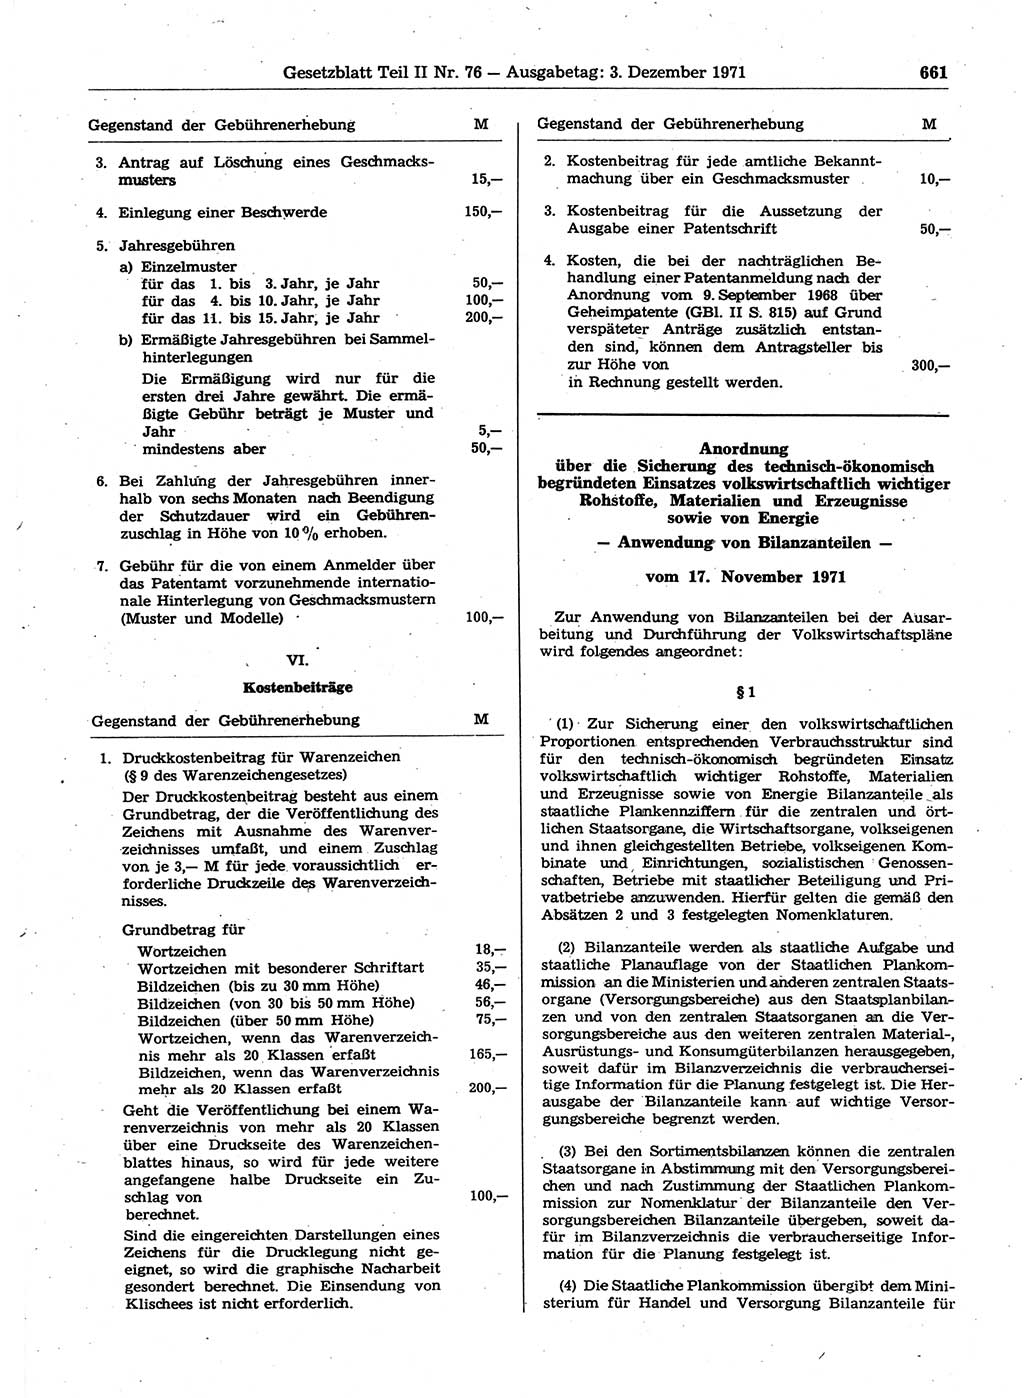 Gesetzblatt (GBl.) der Deutschen Demokratischen Republik (DDR) Teil ⅠⅠ 1971, Seite 661 (GBl. DDR ⅠⅠ 1971, S. 661)